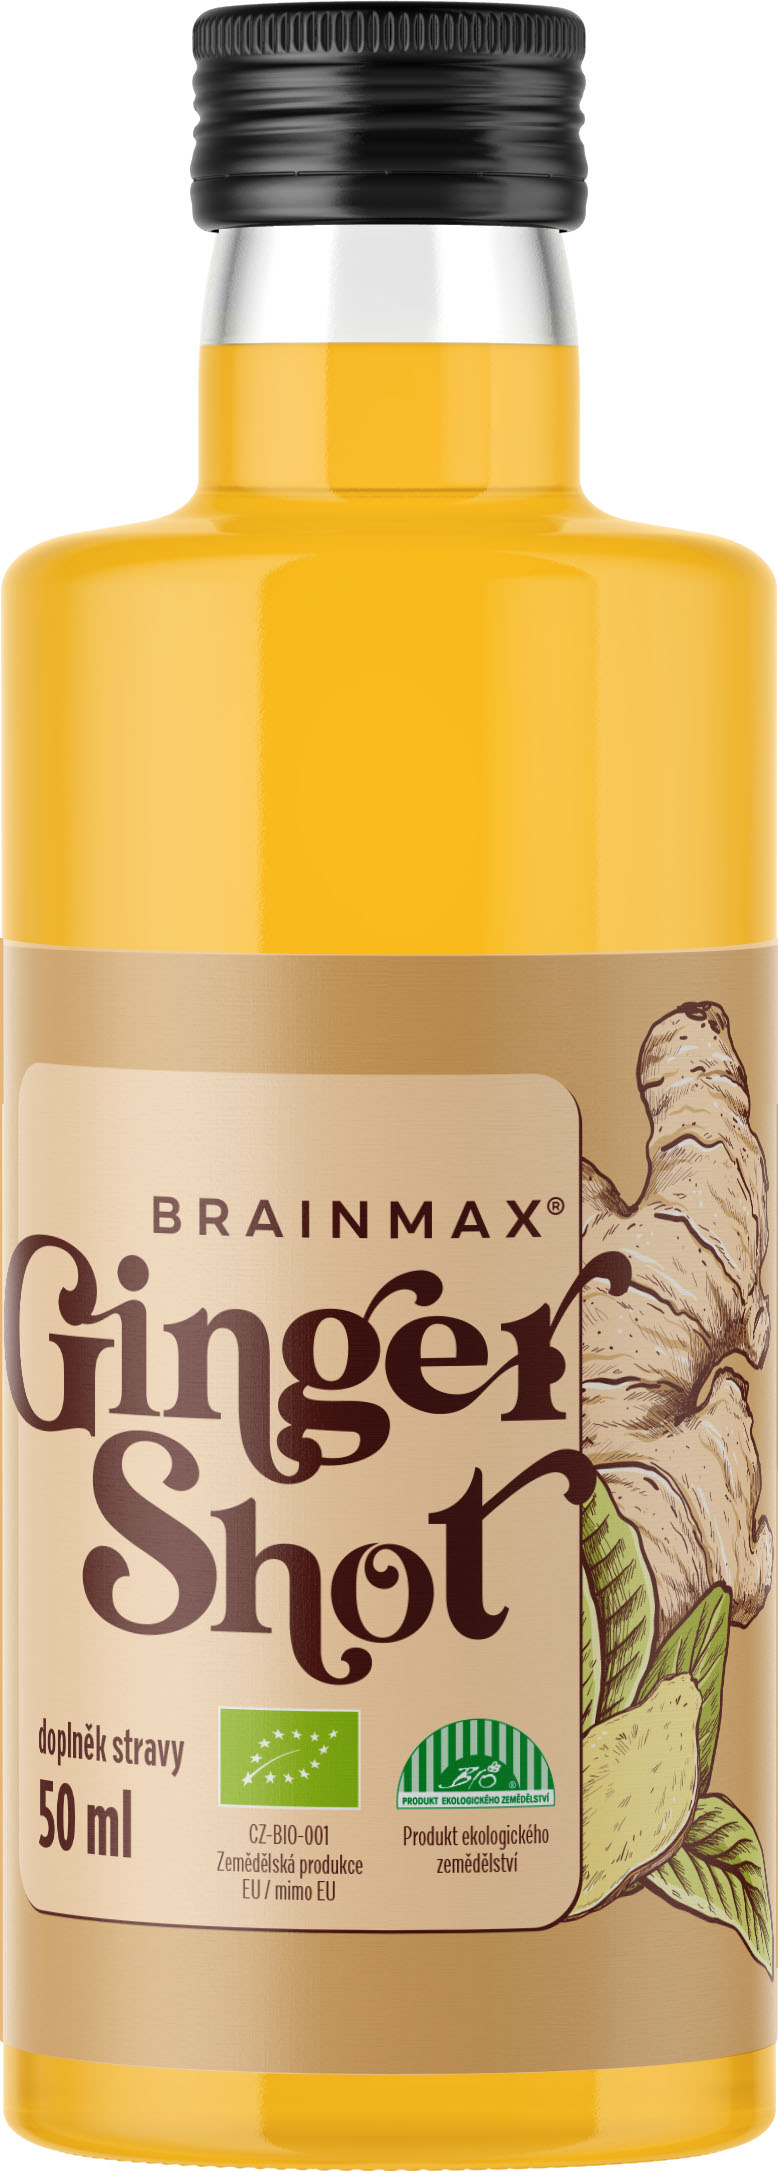 BrainMax Pure Ginger Shot, zázvorová štáva s kurkumou, BIO Objem: 50 ml Šťáva ze zázvoru s kurkumou, medem, kokosovou vodou a kampotským pepřem, *CZ-BIO-001 certifikát